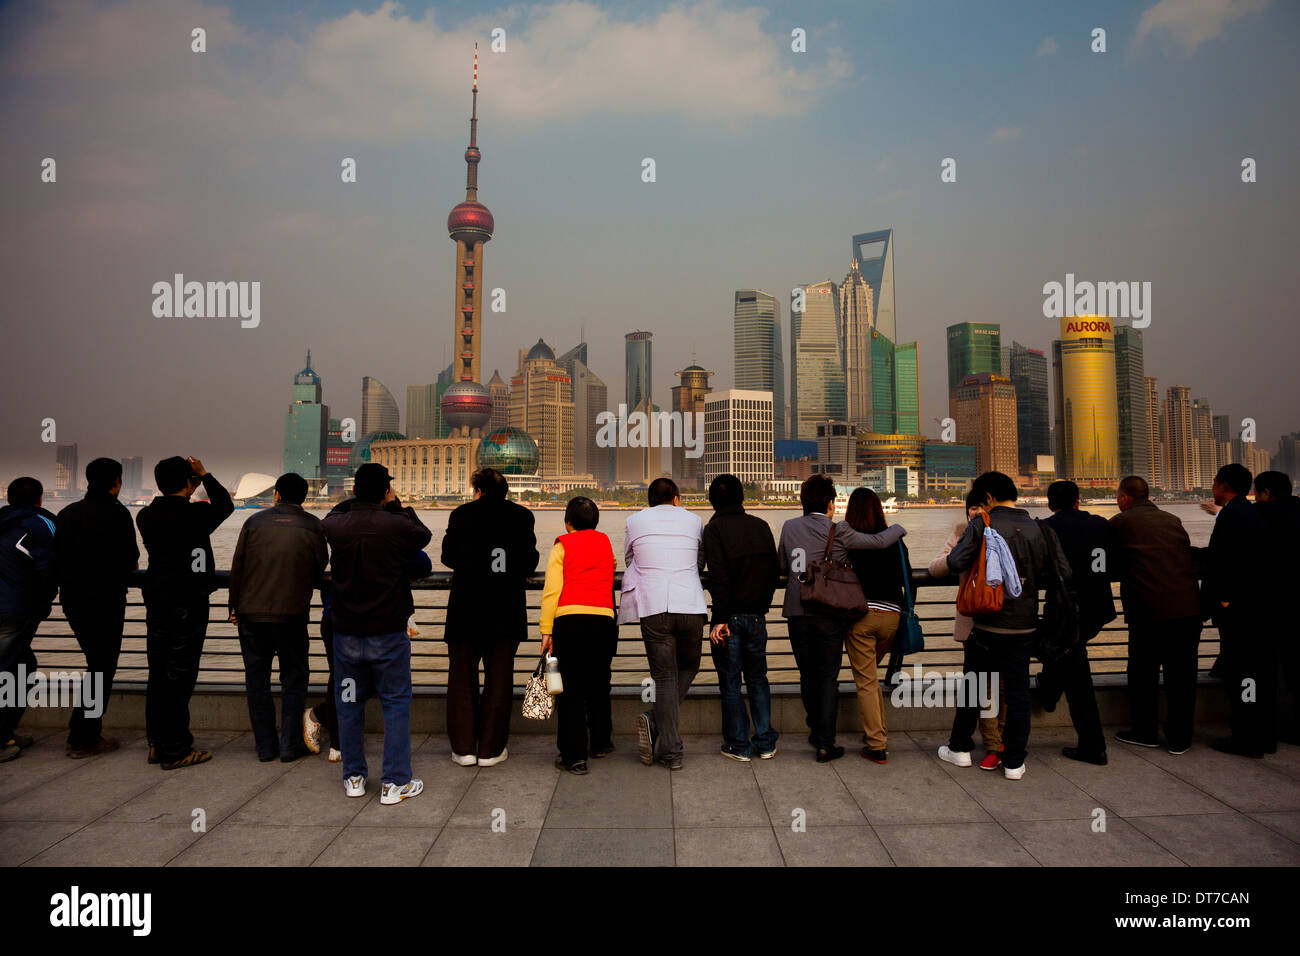 La gente el horizonte de Pudong Oriental Pearl Tower el Centro Financiero Mundial de Shanghai Jin Mao Tower vistos desde el río Huangpu Foto de stock